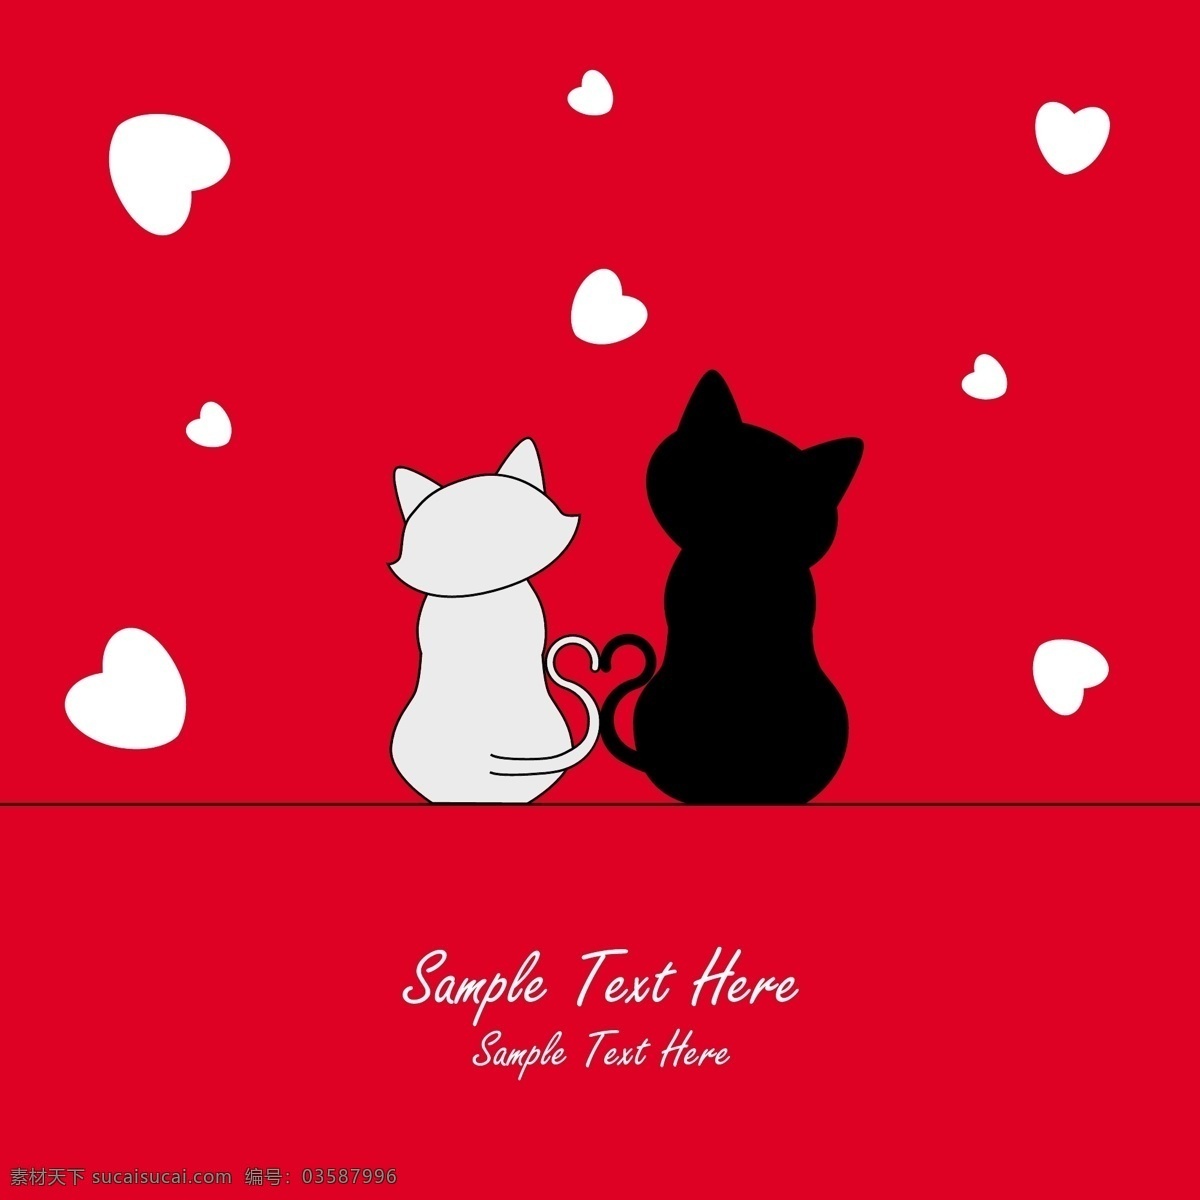 爱心黑白猫咪 爱心 猫咪 黑白 红色底色 可爱 白色心形 其他生物 生物世界 矢量